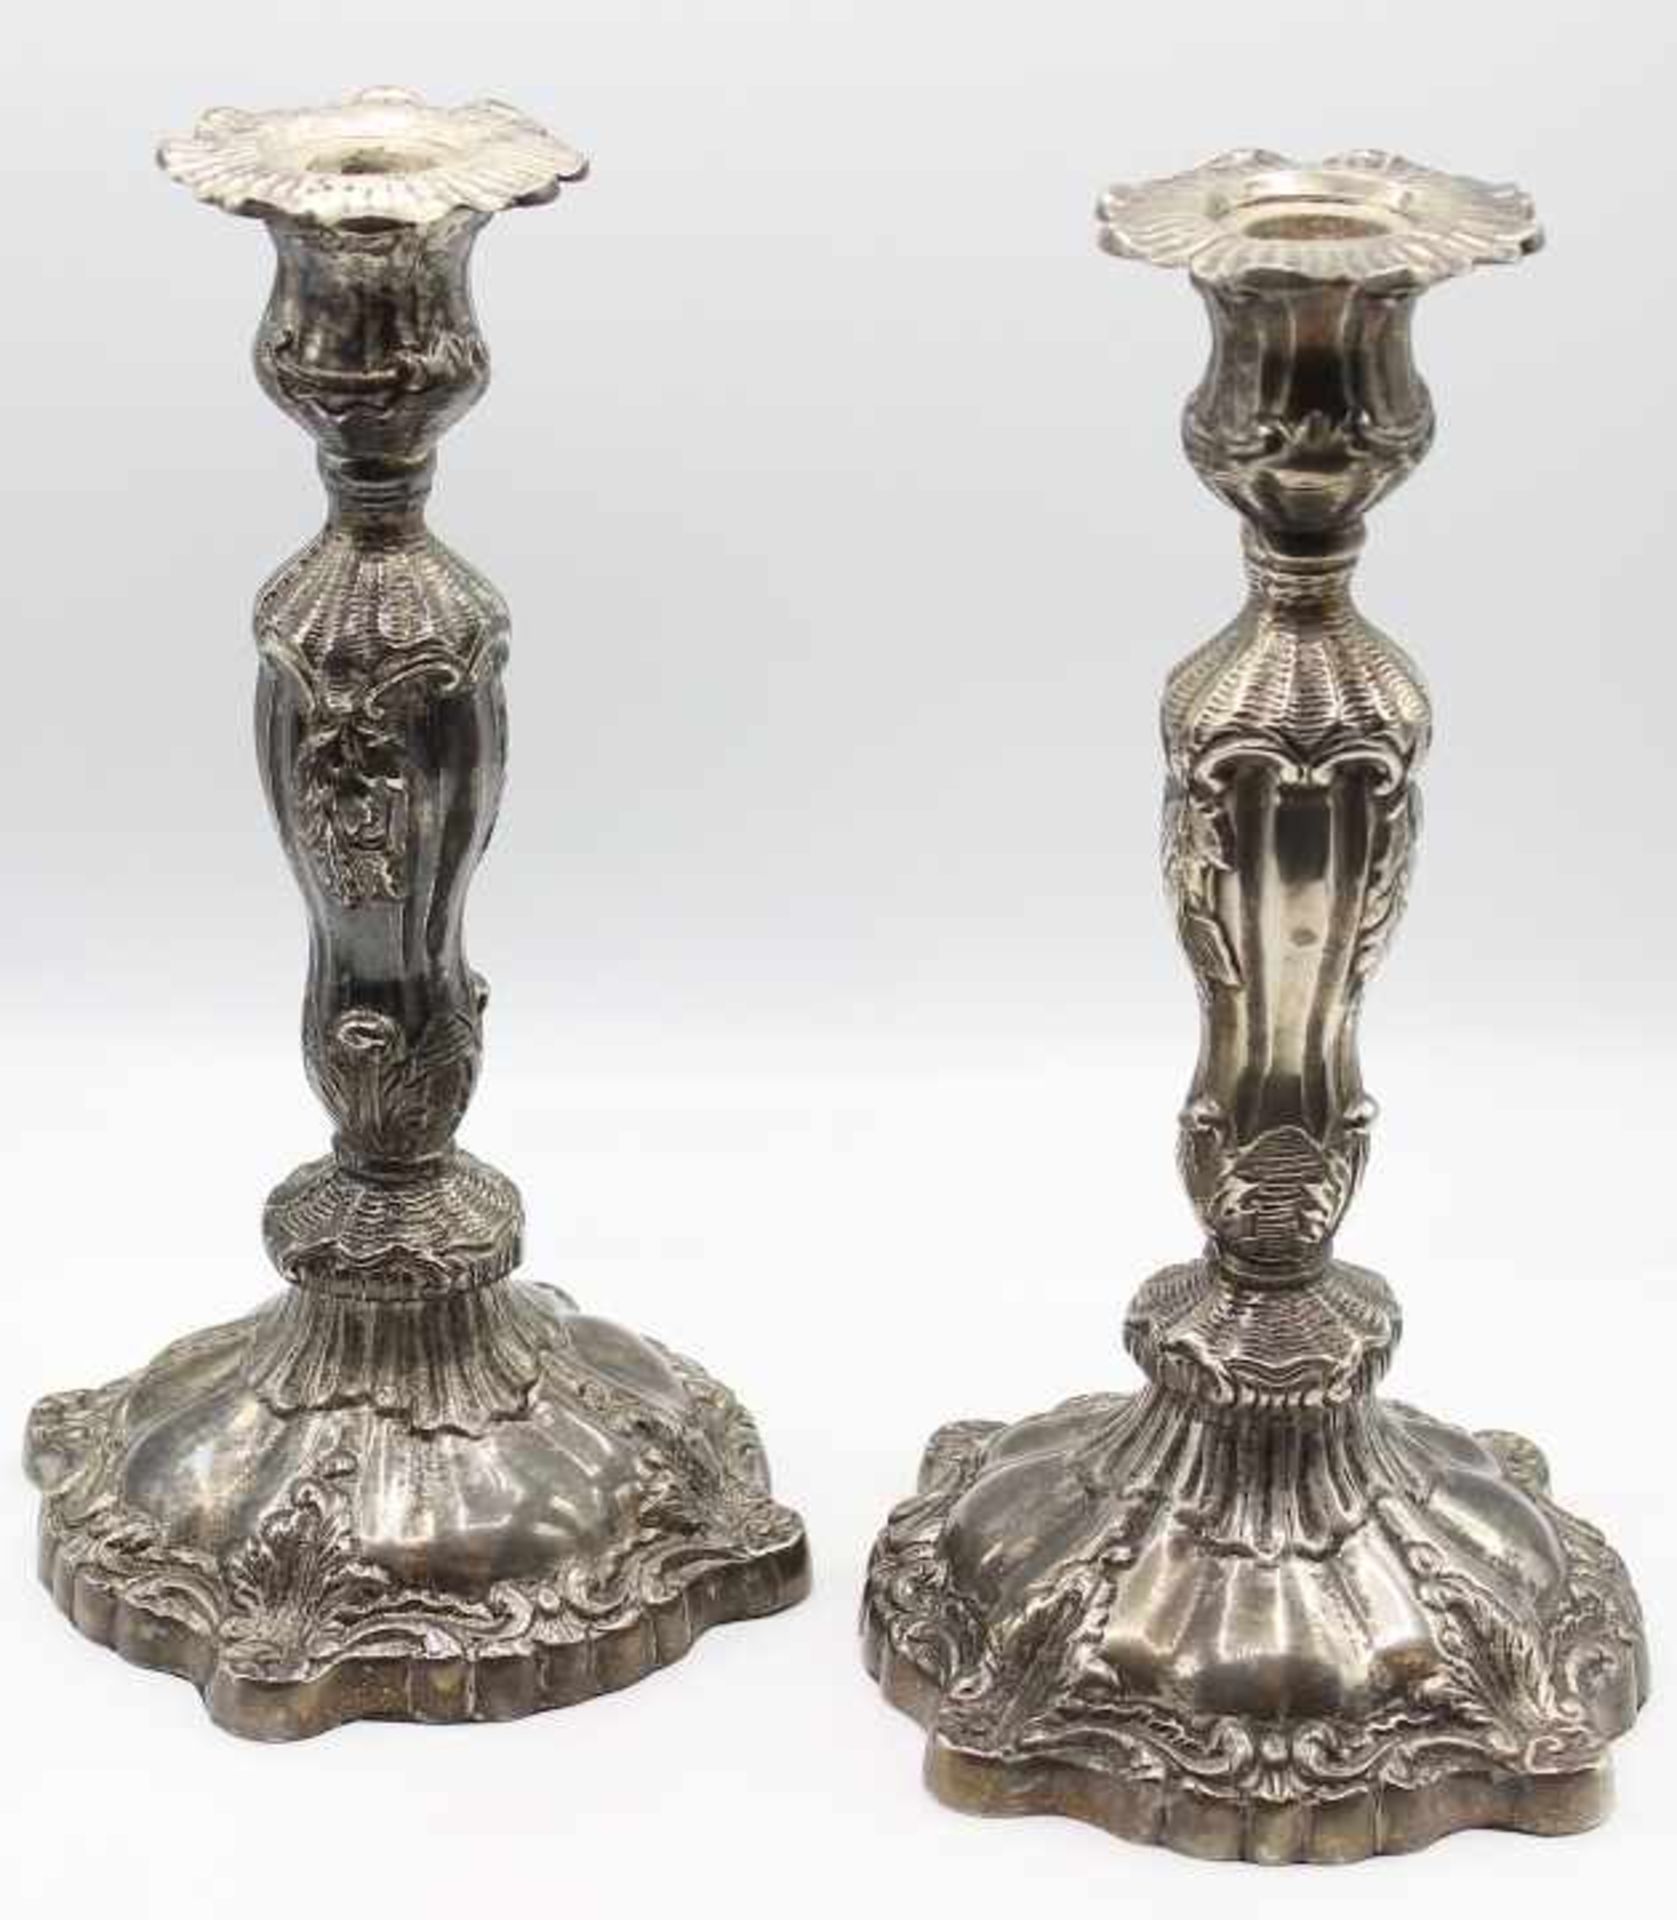 Paar Kerzenleuchter - 19./20.Jahrhundert barocke Form, versilbert, verziert mit Rocaillen und